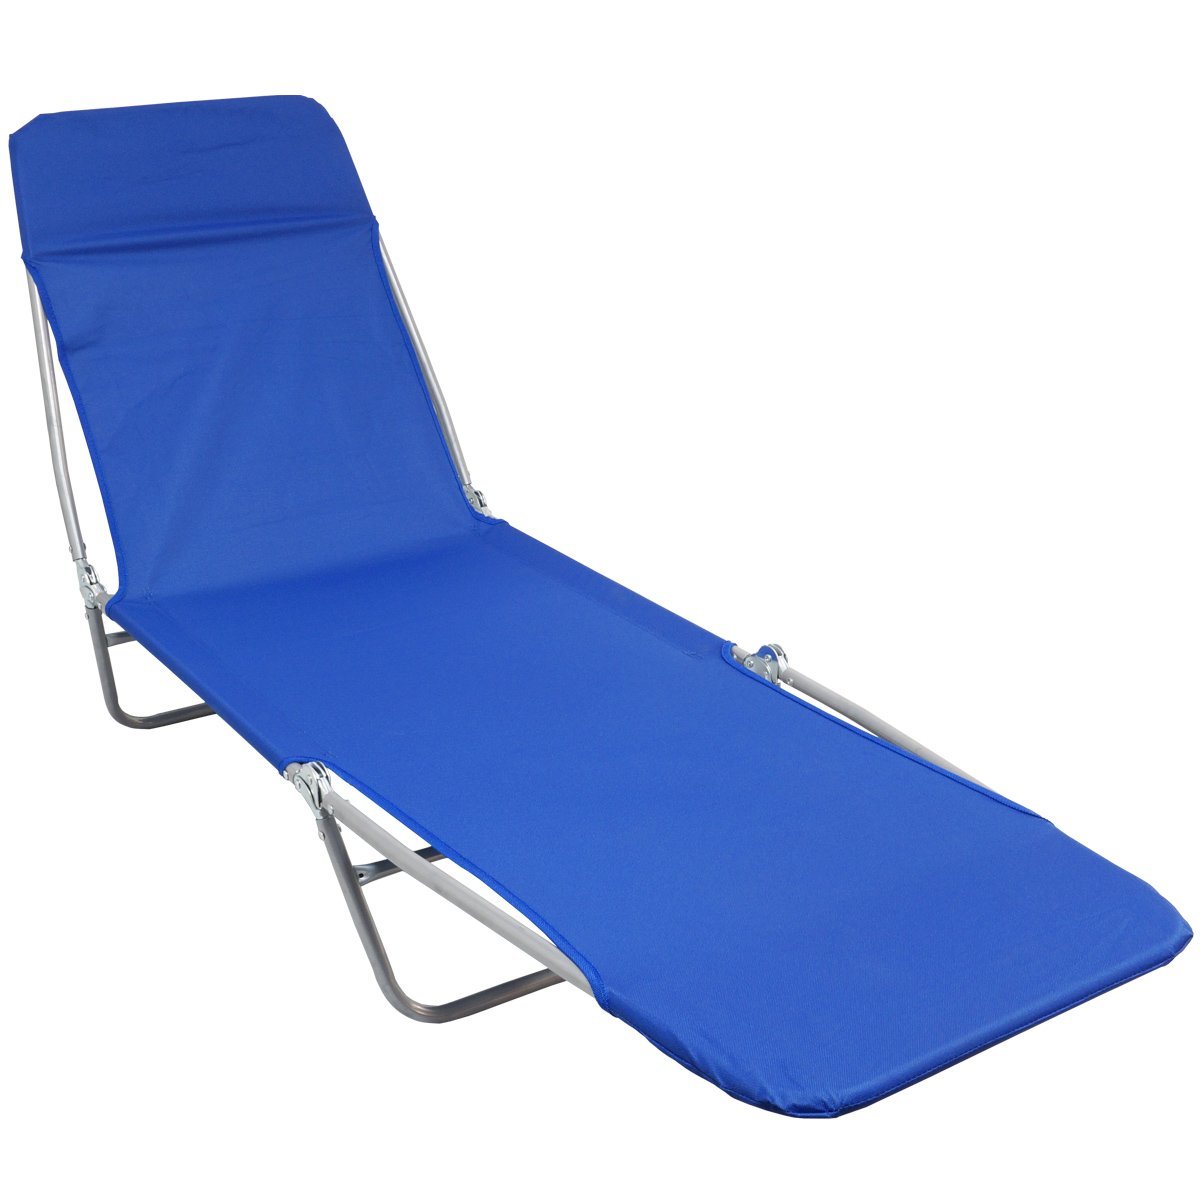 Cadeira Espreguiçadeira Dobrável 5 Posições Textline Praia Piscina Camping Importway IWCET-001 Azul 